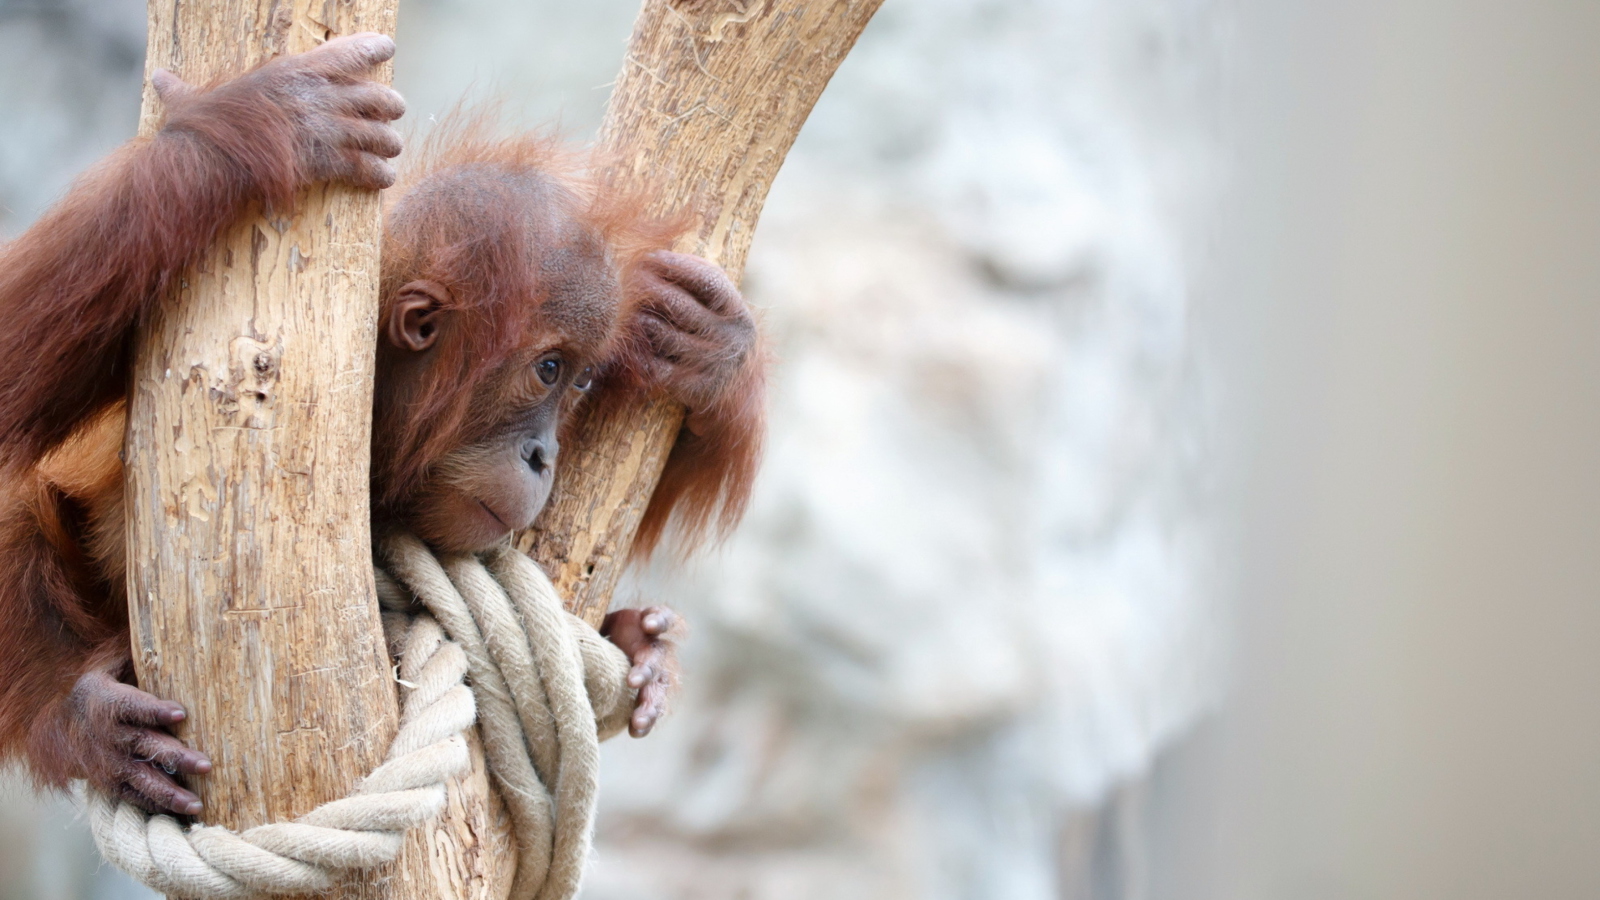 Fondo de pantalla Cute Little Monkey In Zoo 1600x900